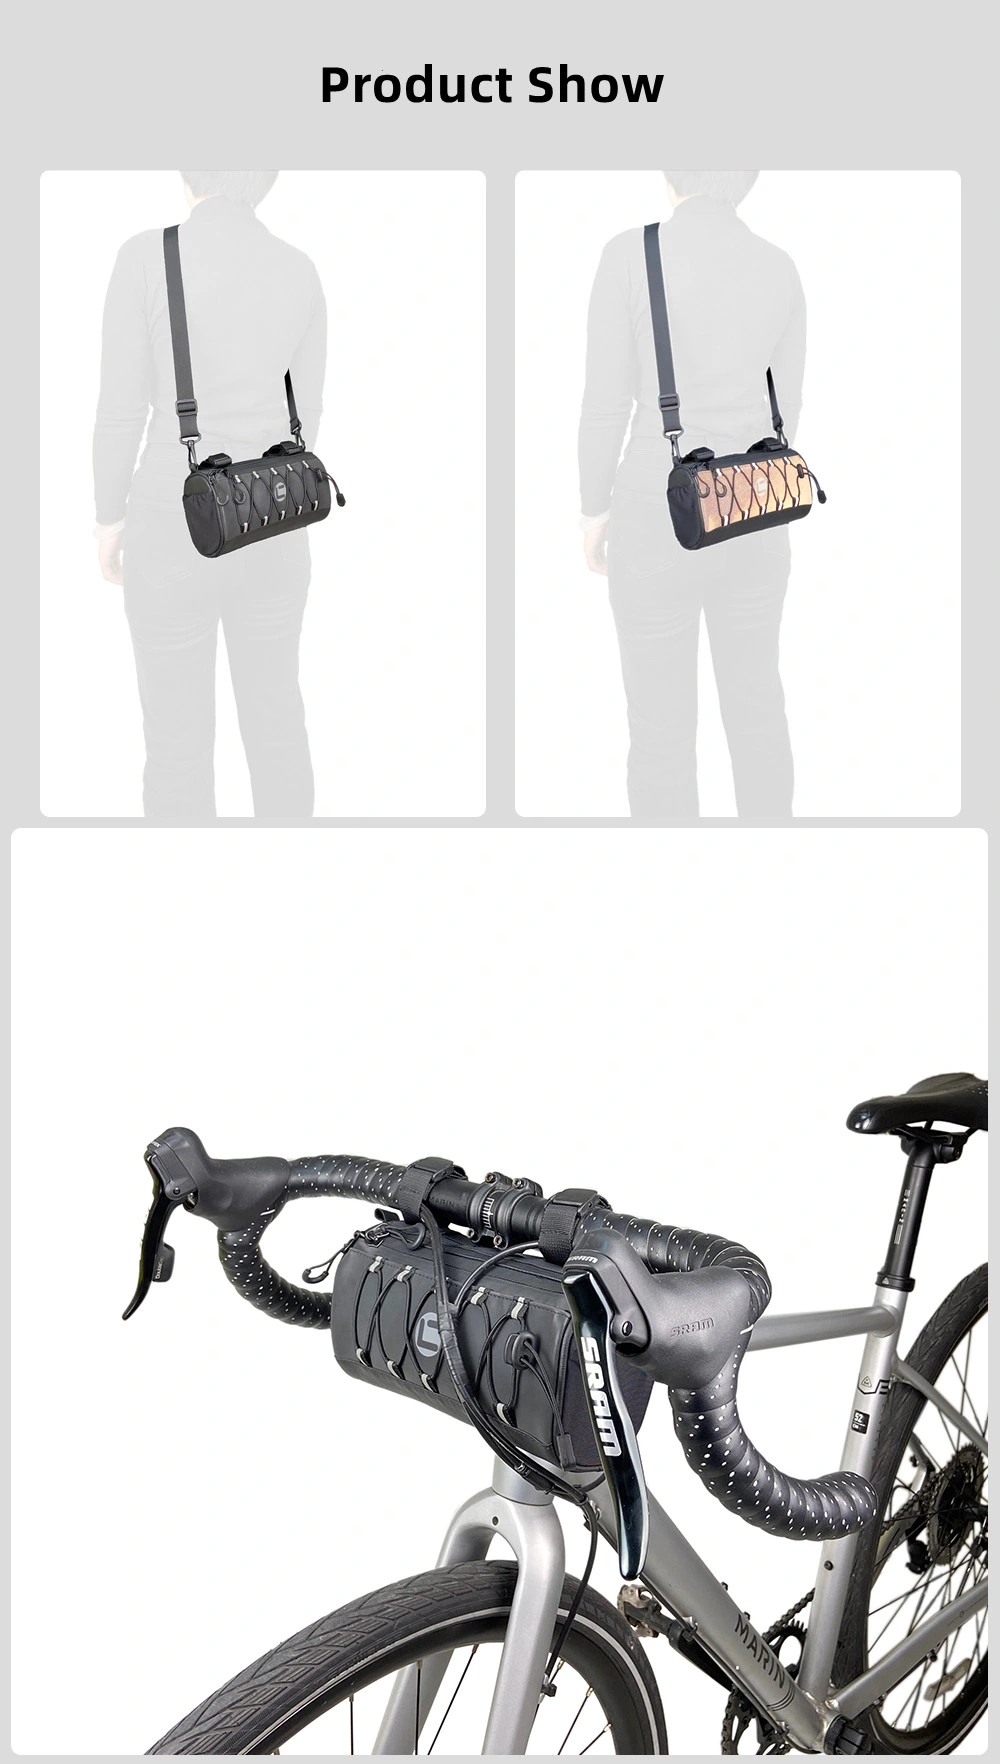 New Bicycle Bike Handlebar Bag Shoulder Crossbody Travel Bags